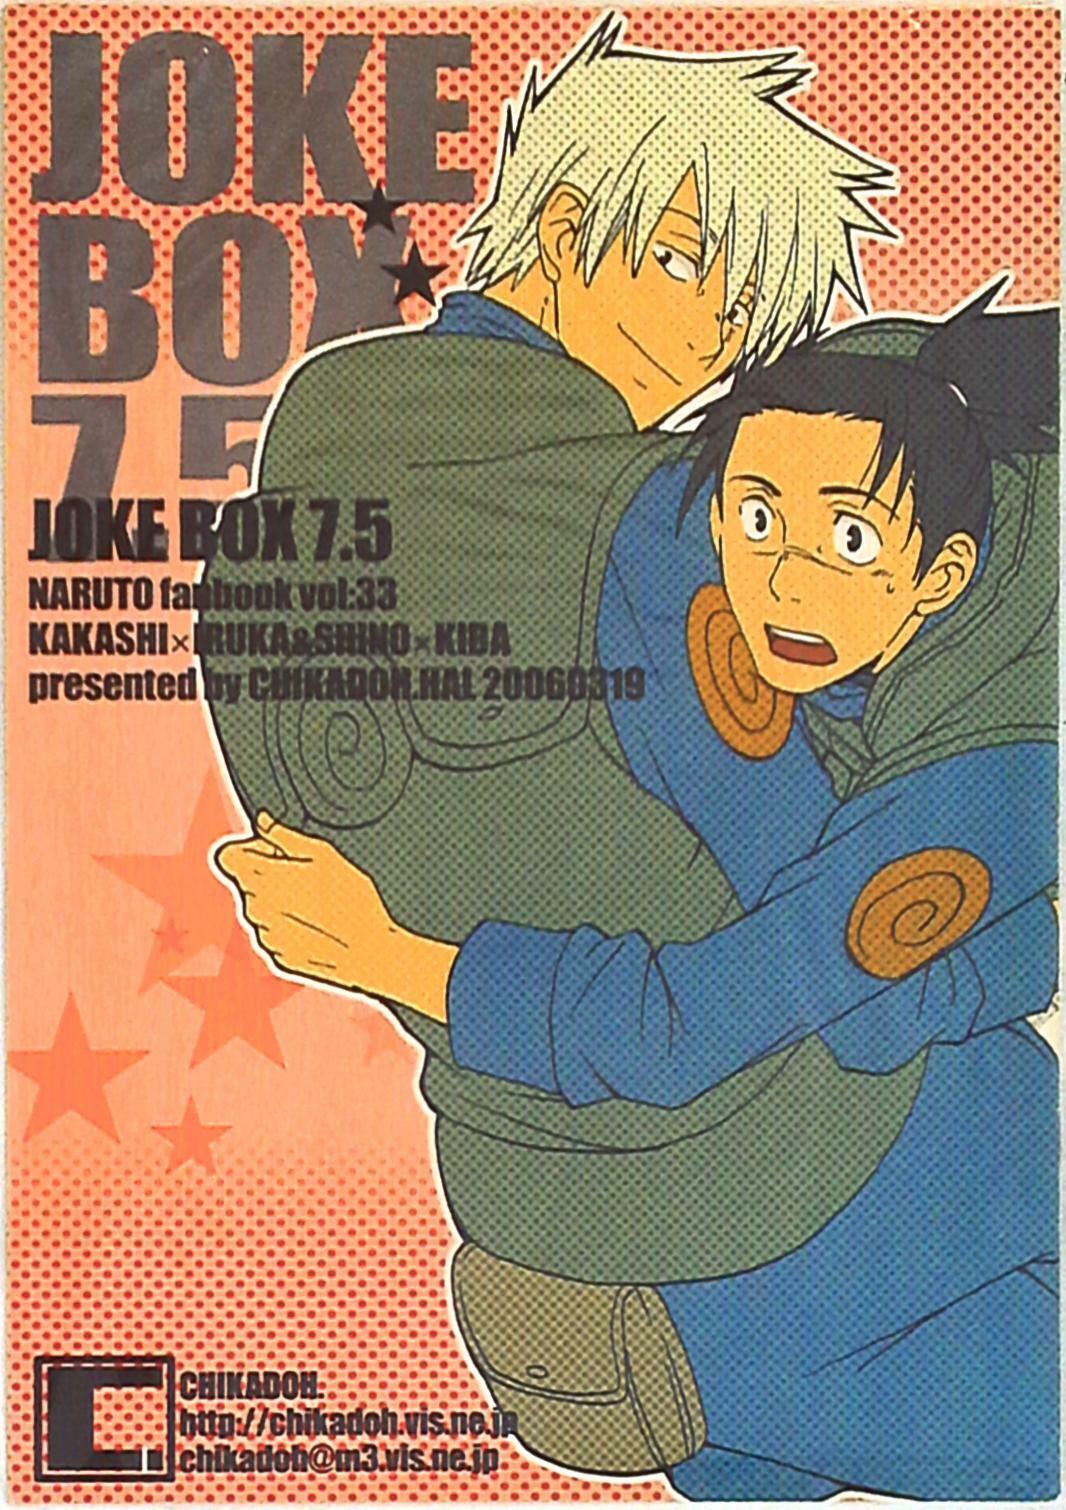 Doujinshi Chikadoh (Haruko) JOKEBOX 7.5 (Naruto )